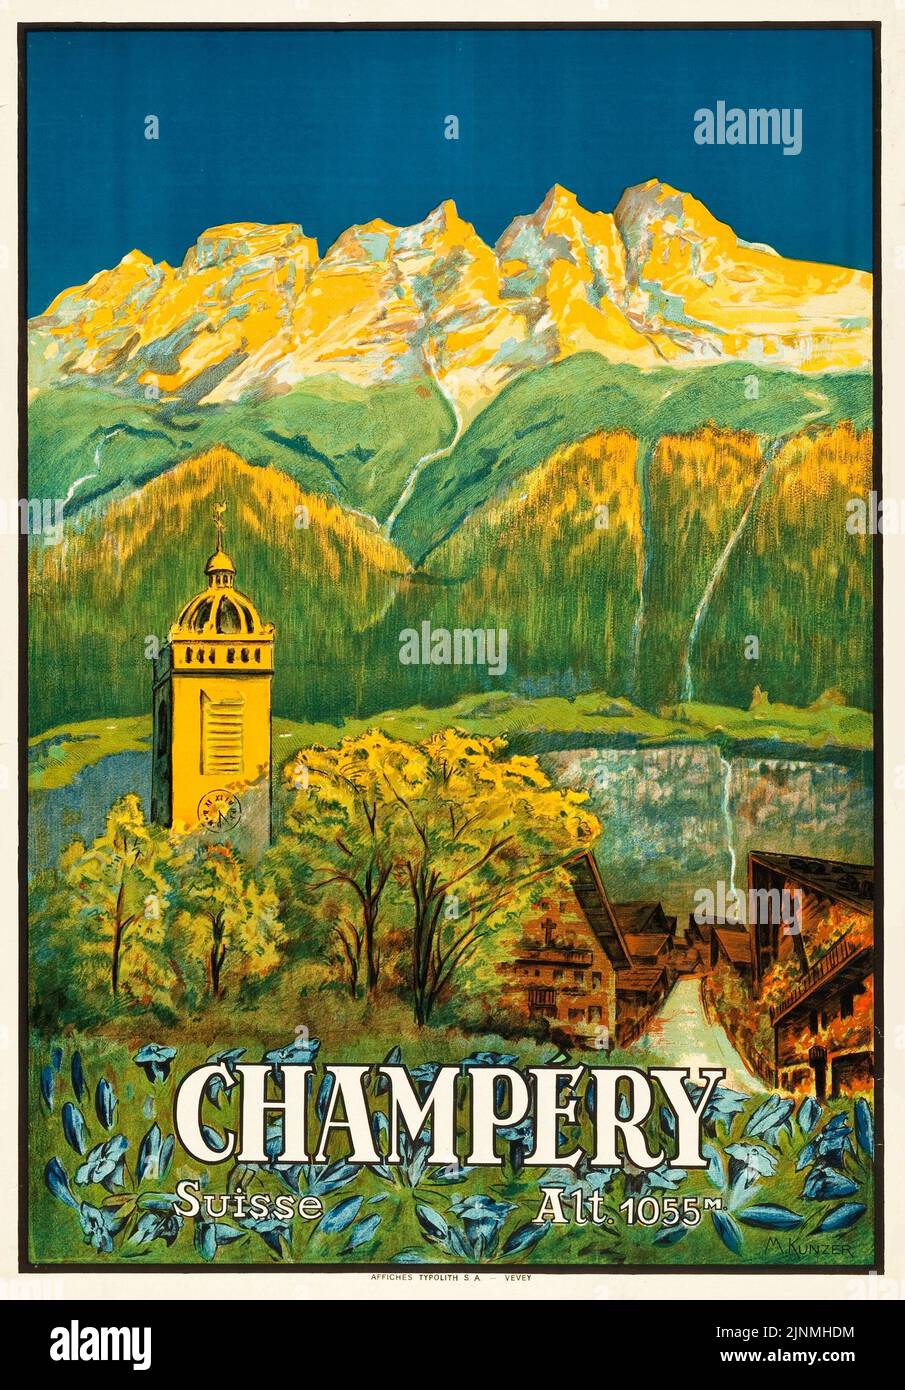 Champéry, Suisse affiche de voyage (Affiches Typolith, S.A. Vevey, 1920s) Suisse, Suisse, Suisse, Suisse. Banque D'Images